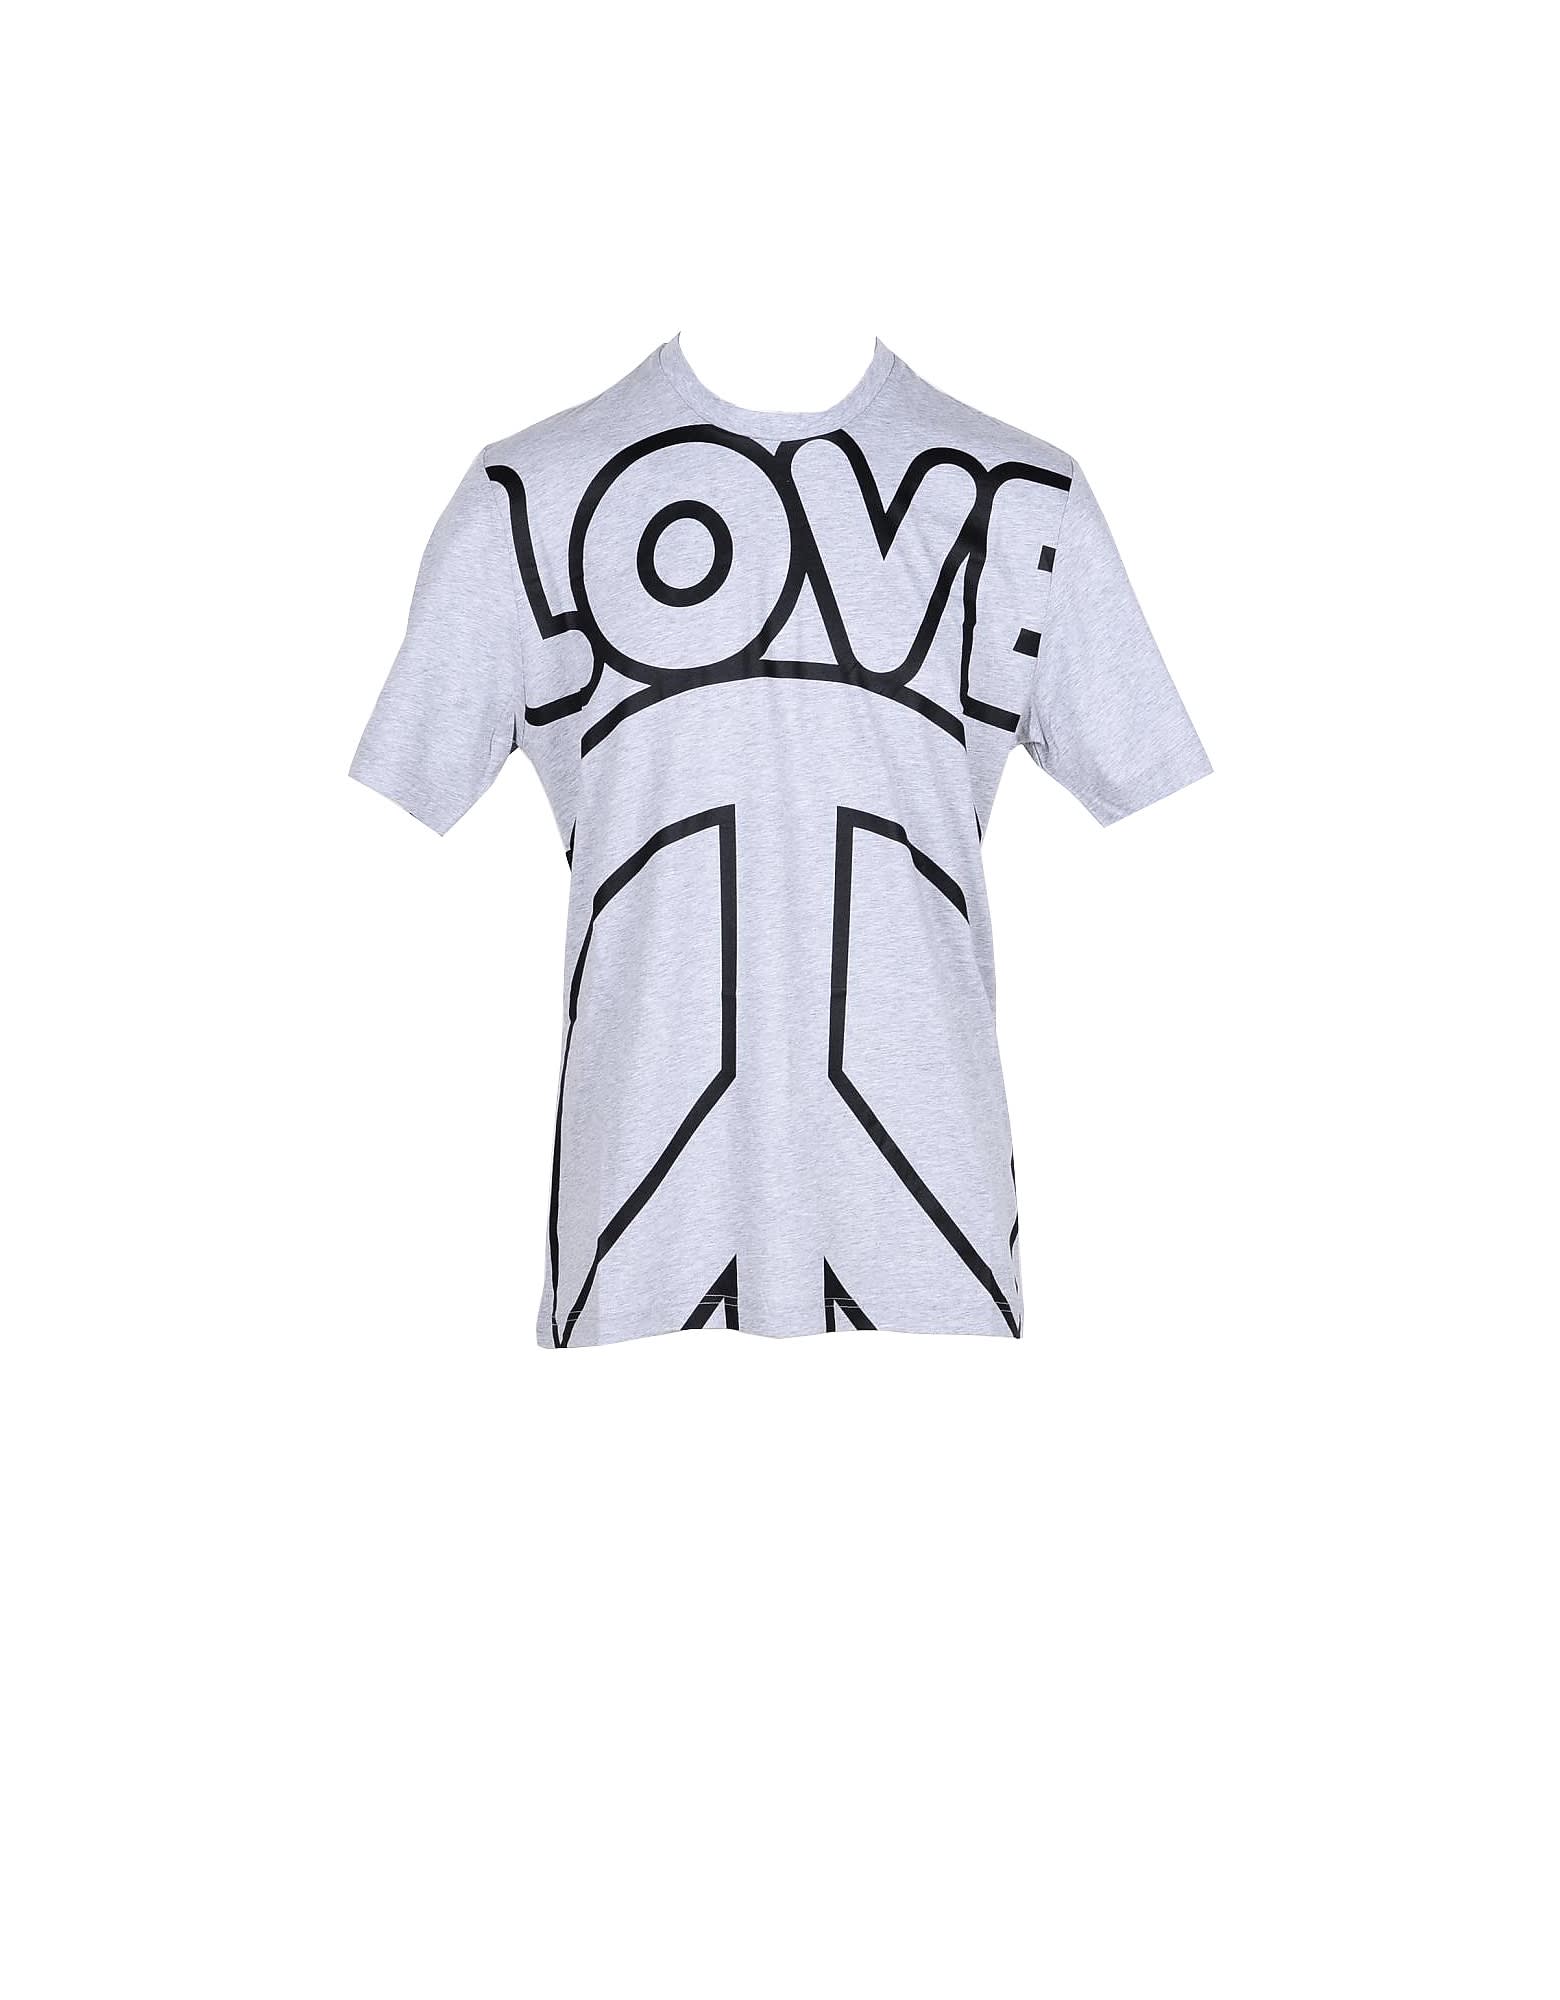 Love Moschino Mens Gray T-shirt